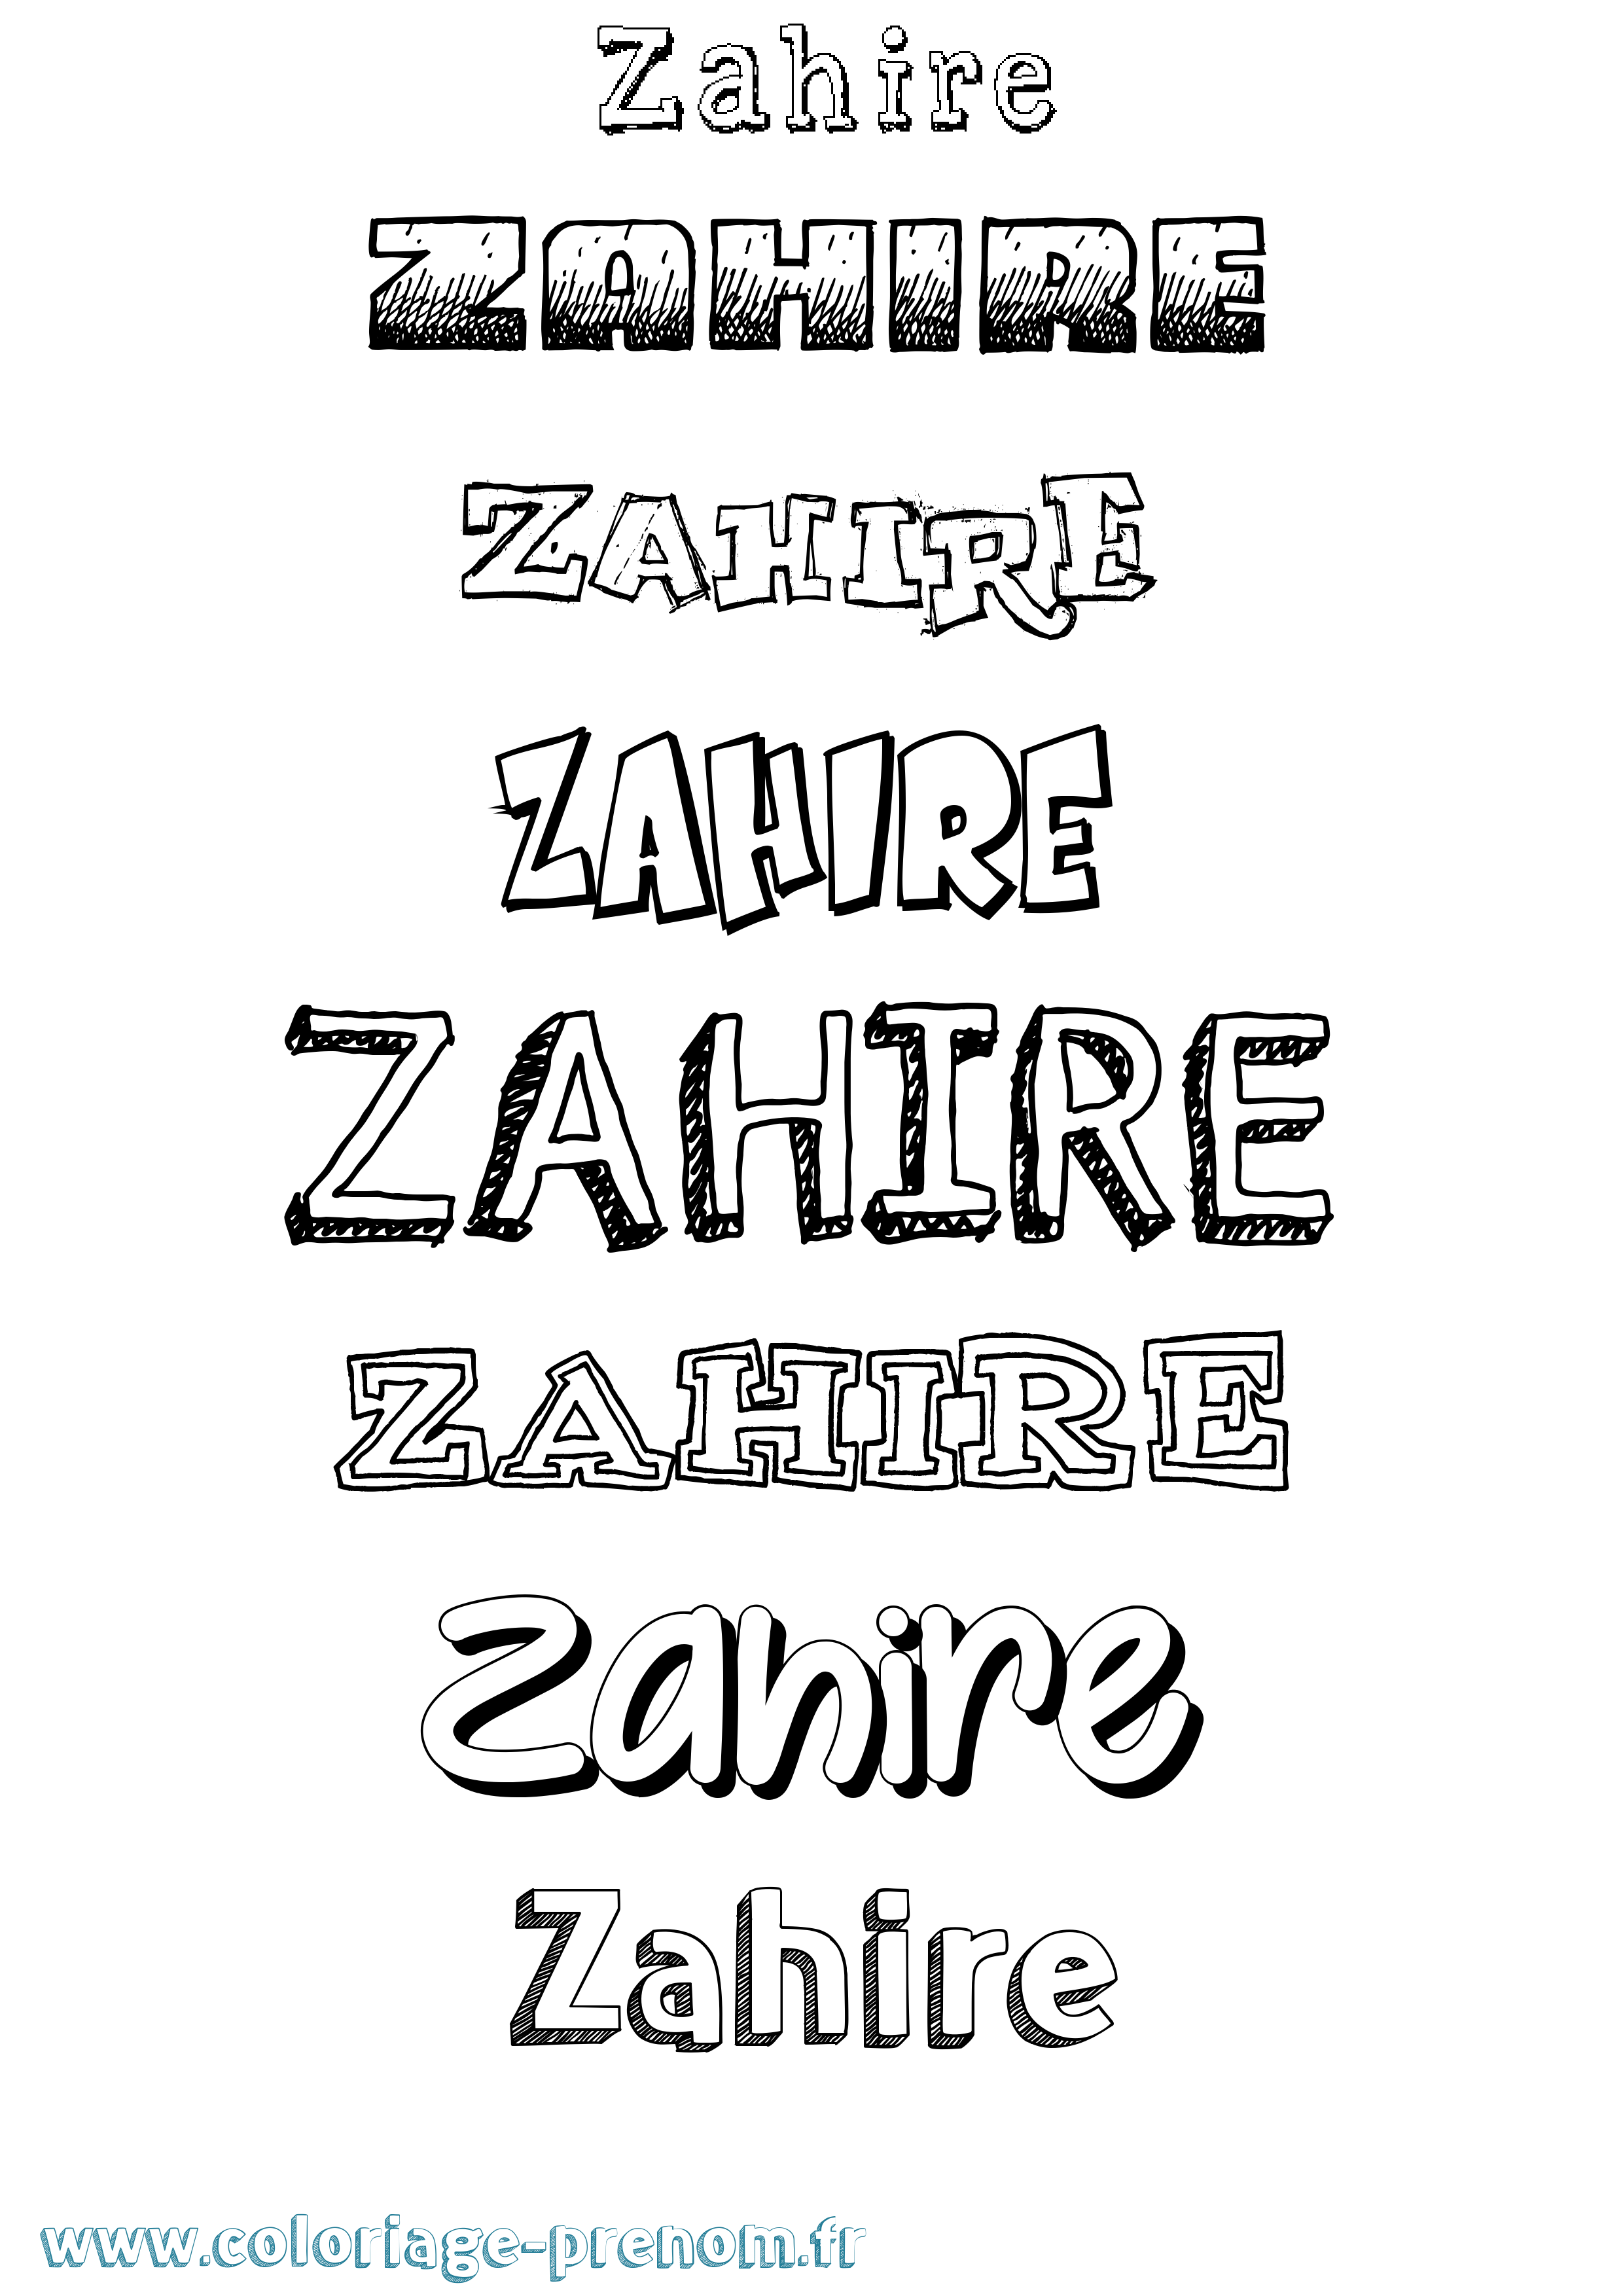 Coloriage prénom Zahire Dessiné